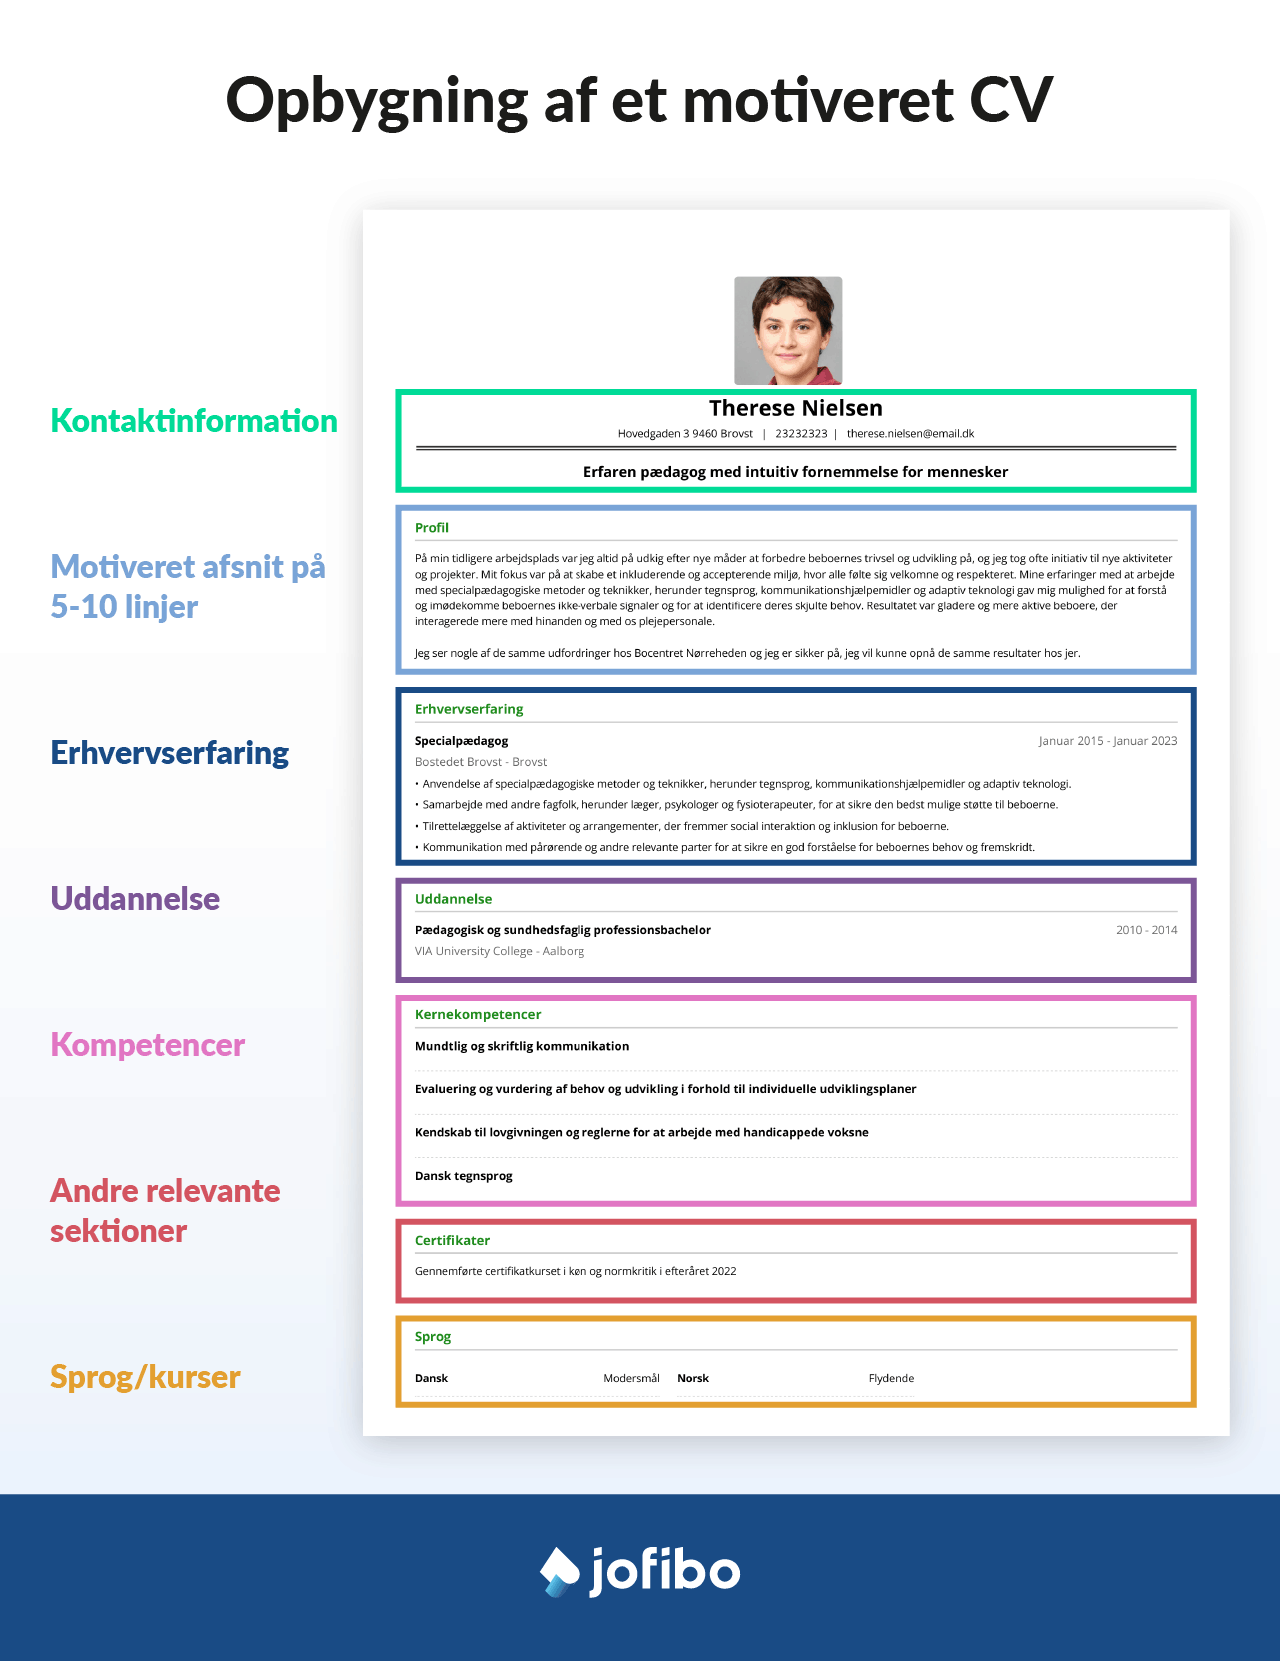 Billede af et motiveret CV med oversigt over de forskellige sektioner